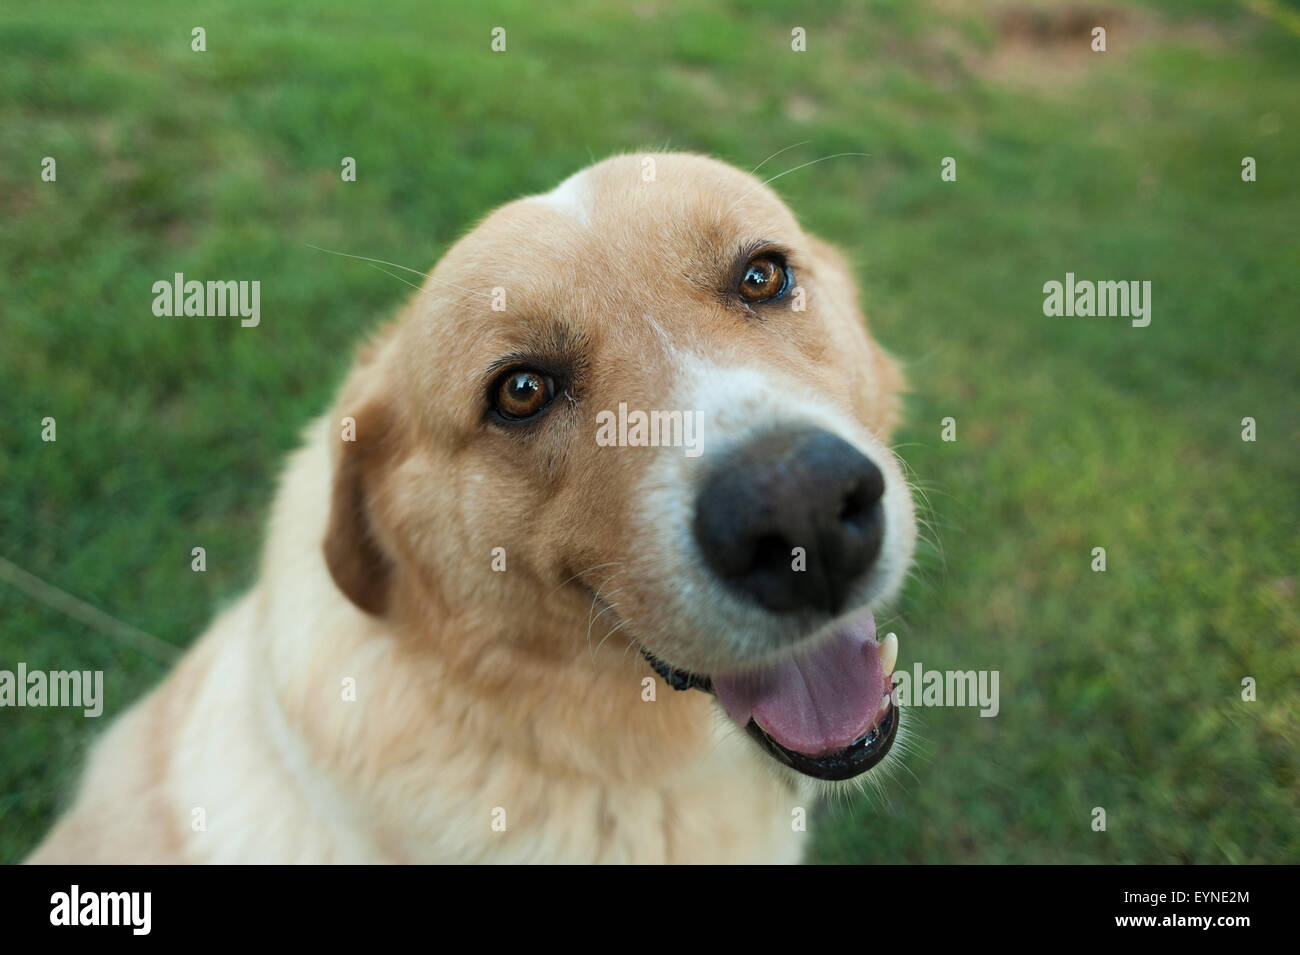 The family dog, Bozo. Stock Photo